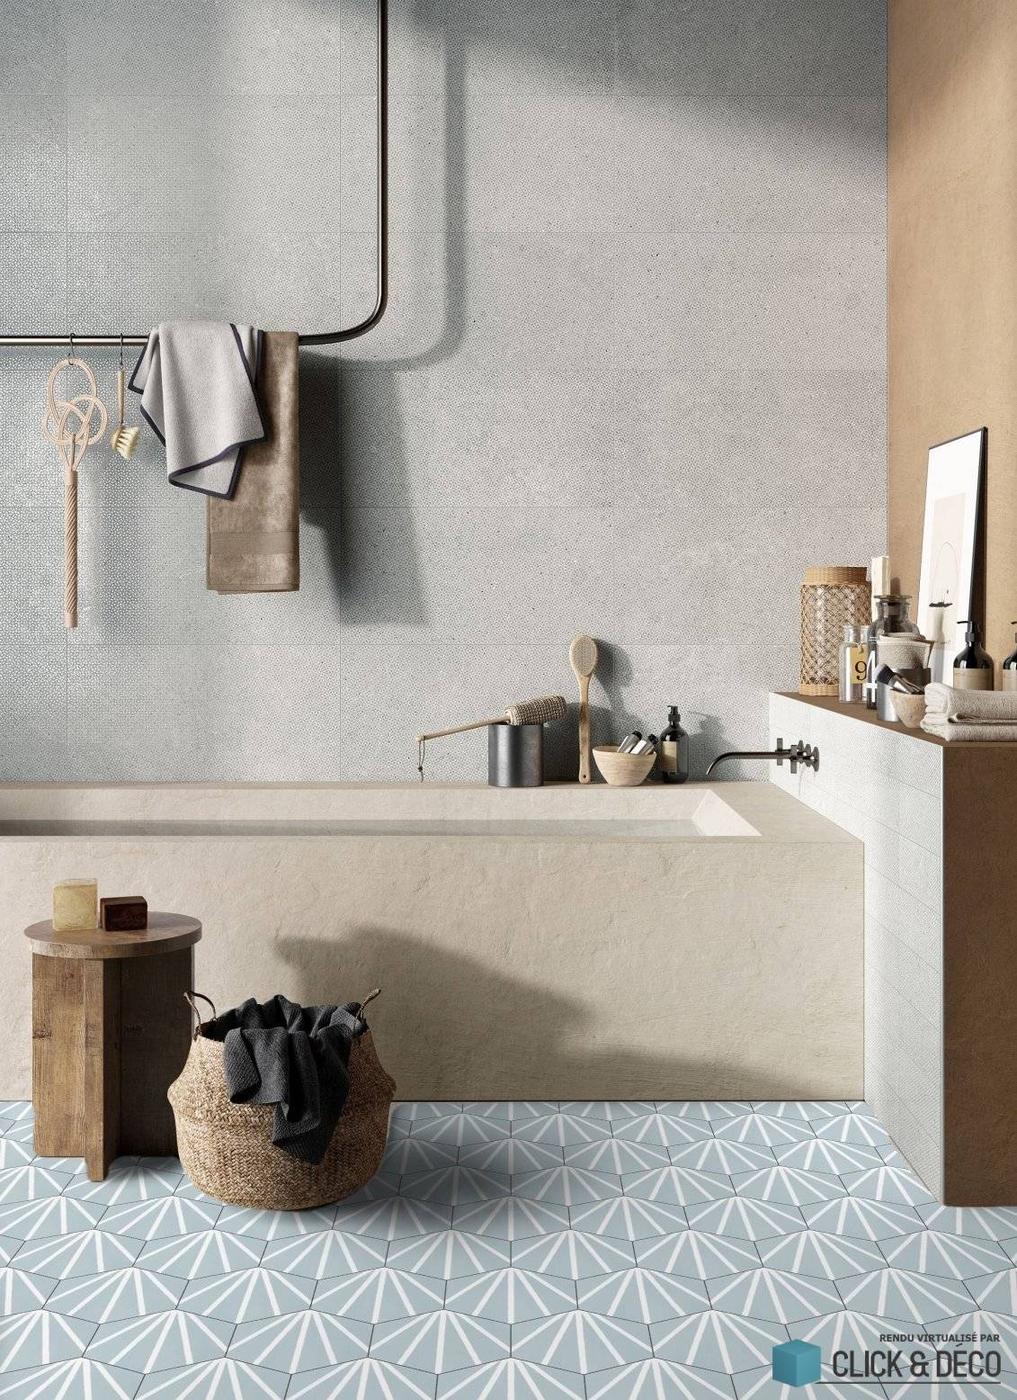 Carreau de ciment bleu motifs géométriques blancs 19.9x23 cm sur une salle de bain tons beige et gris accessoires en bois et panier en osier